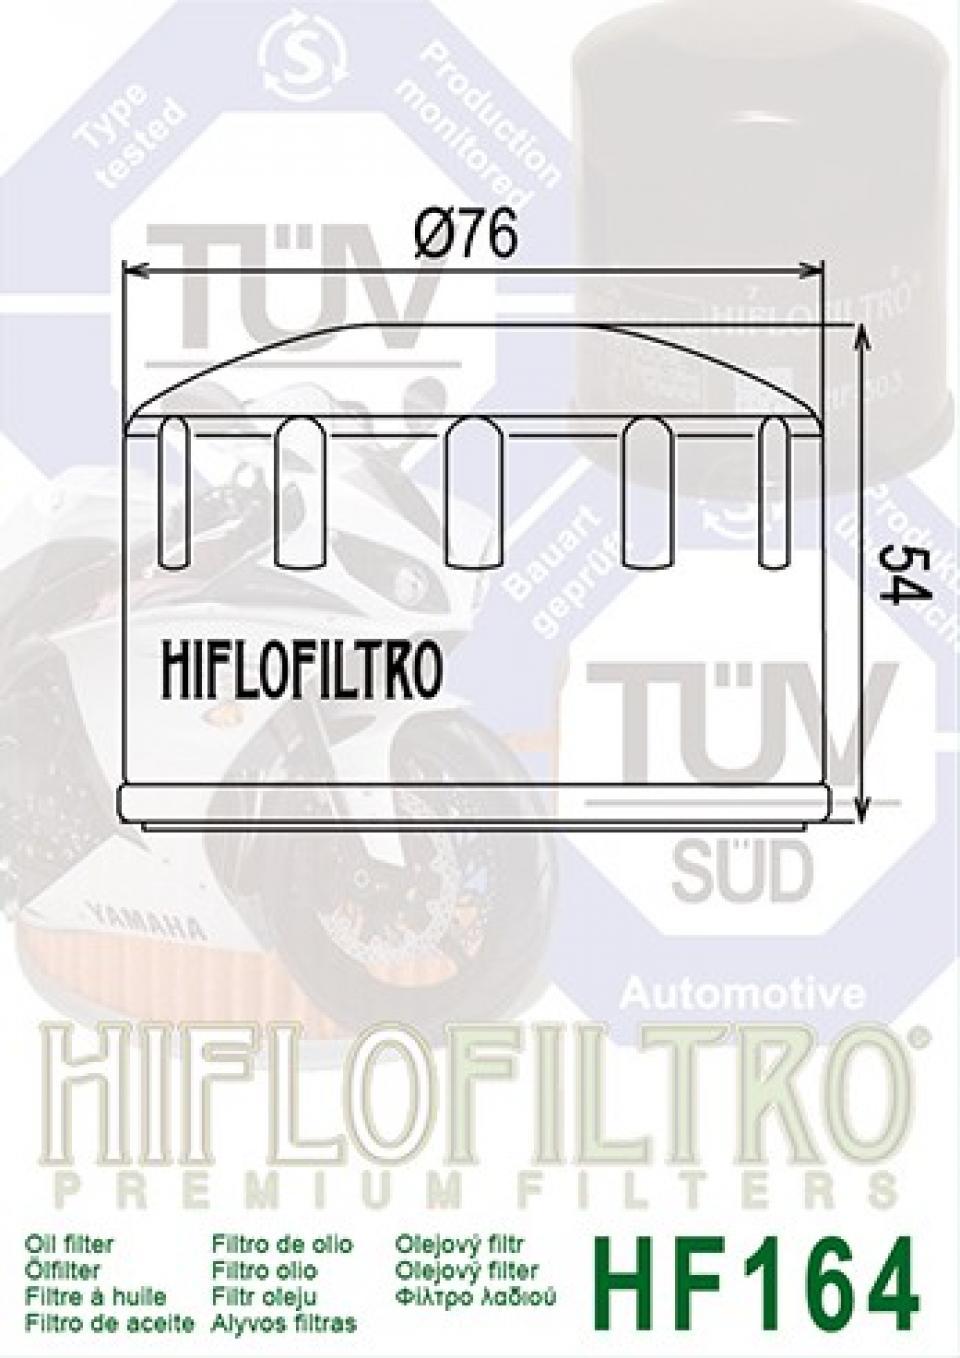 Filtre à huile Hiflofiltro pour Moto BMW 1200 GS 2004 à 2013 HF164 Neuf